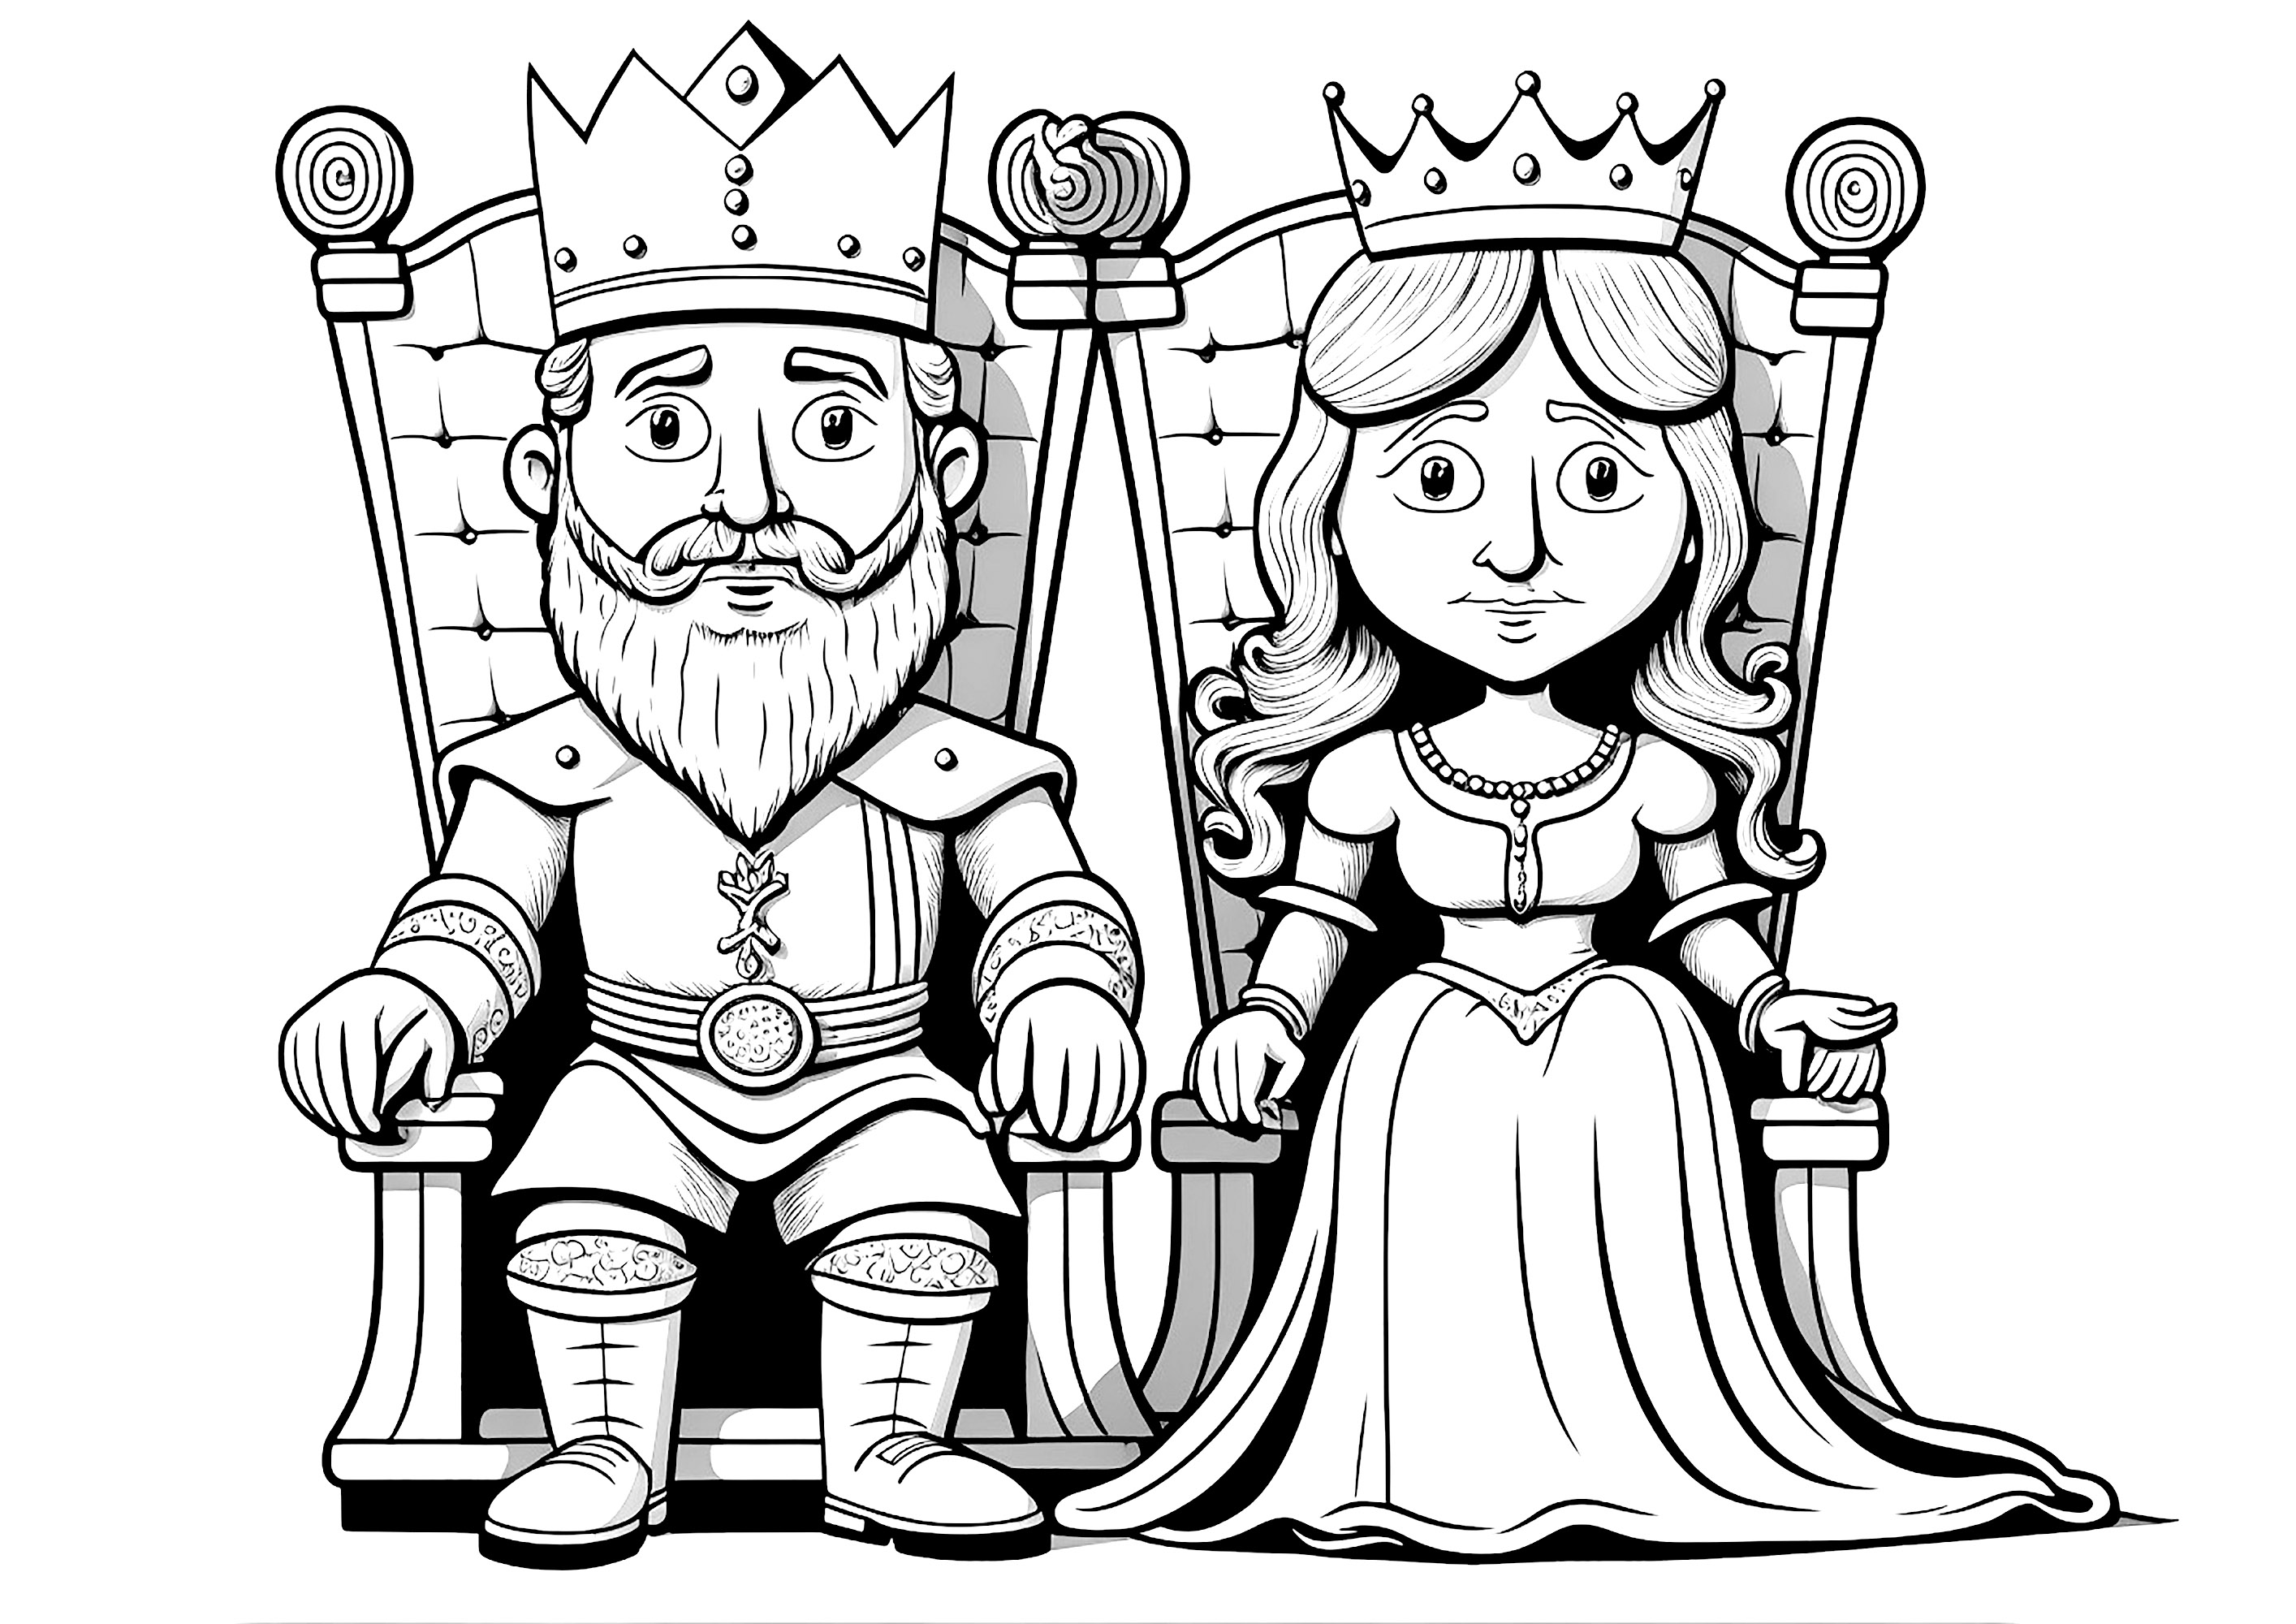 La pareja real sentada en sus tronos reales, con aspecto muy serio